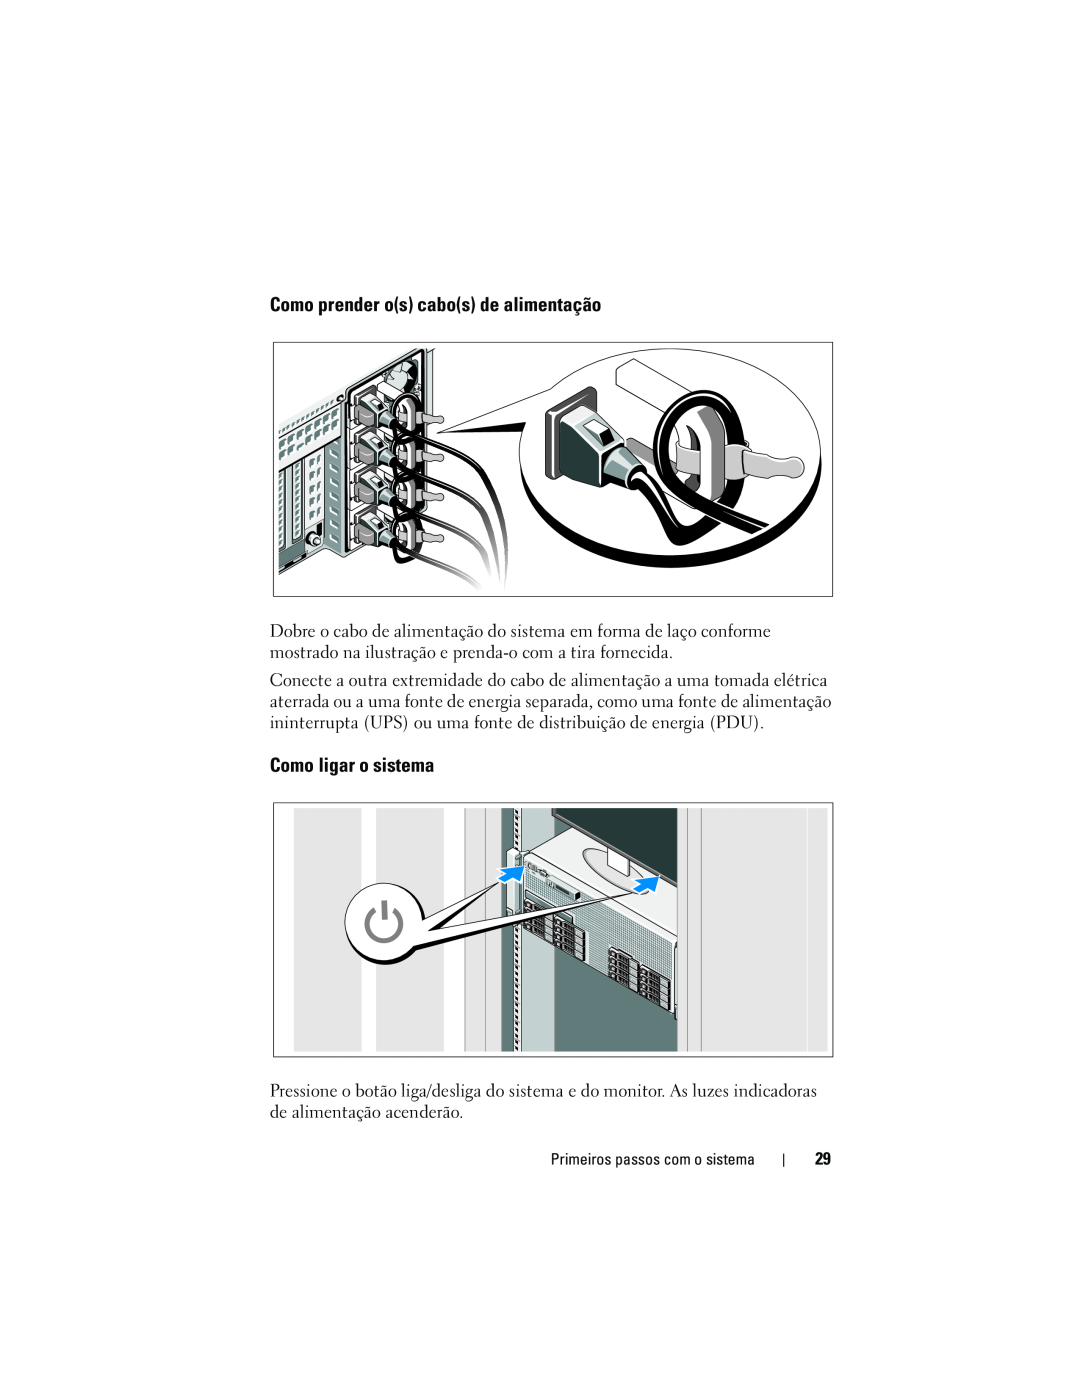 Dell R910 manual Como prender os cabos de alimentação, Como ligar o sistema 